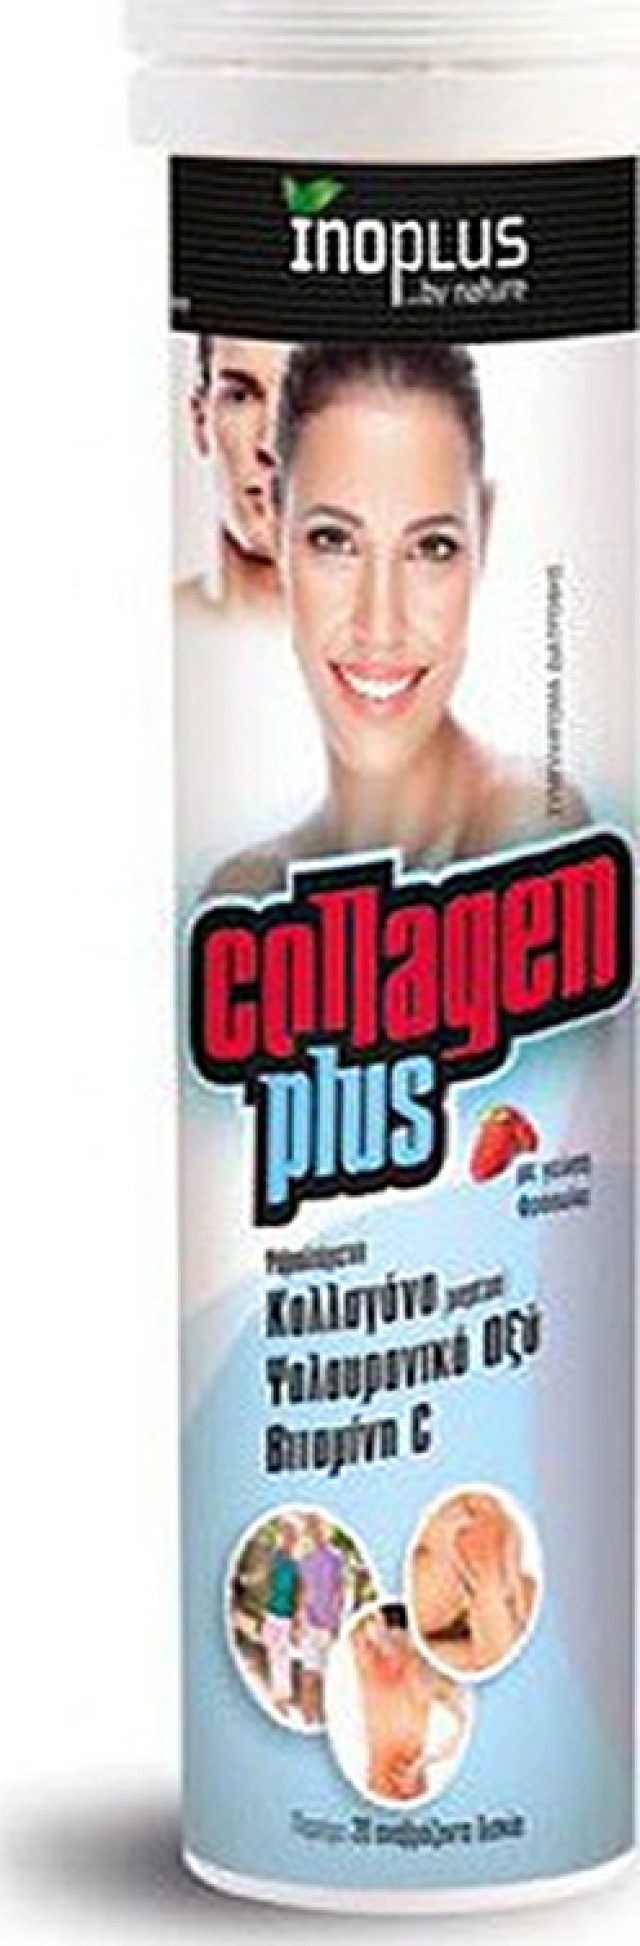 Ino Plus Plus Collagen Plus, 20 Αναβράζοντα Δισκία